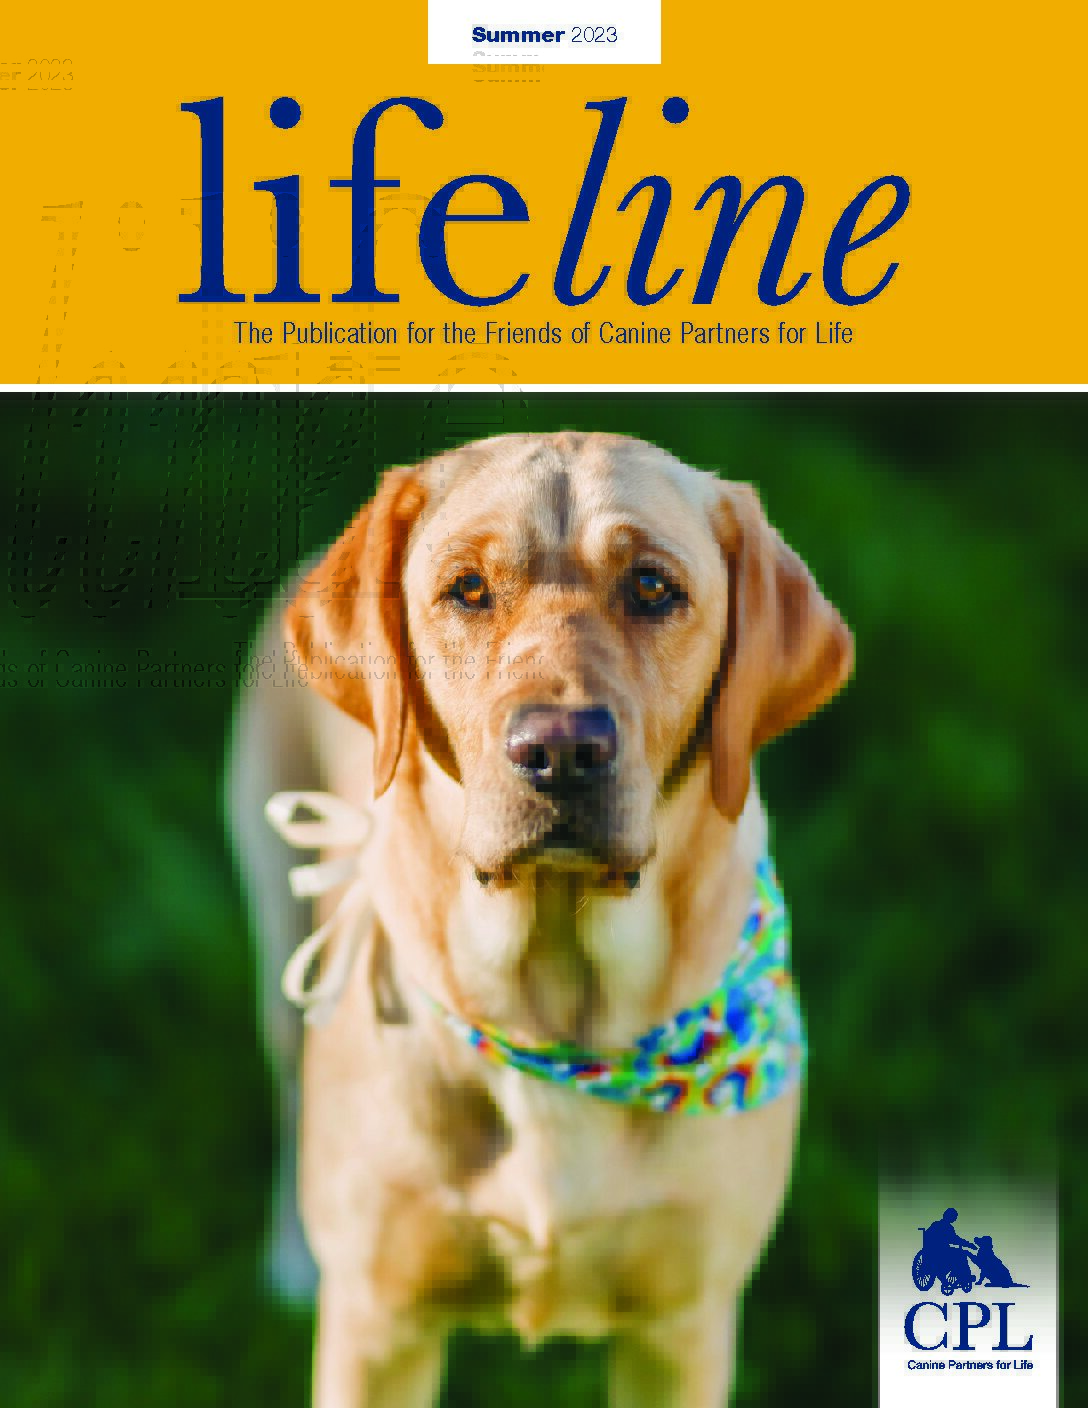 Summer 2023 Lifeline magazine